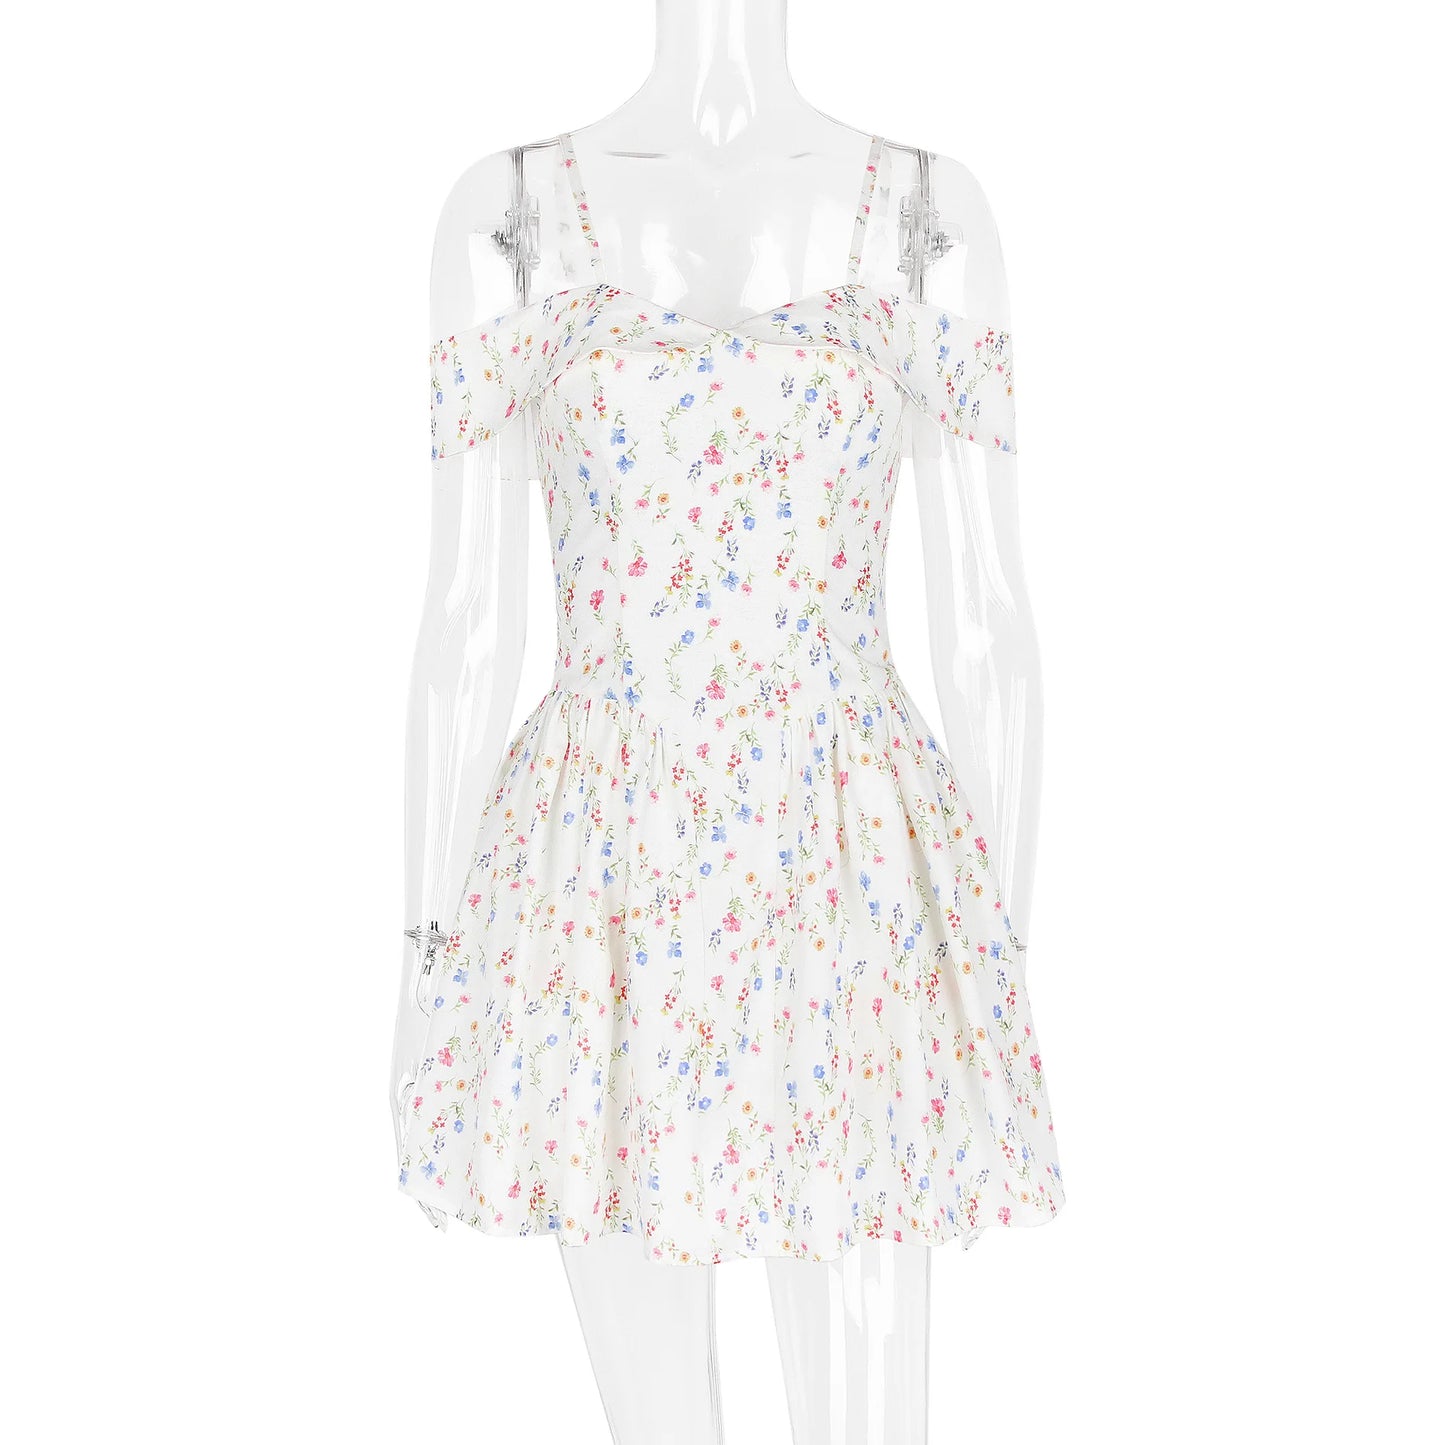 فستان نسائي صيفي قصير بطيات باللون الأبيض 90034